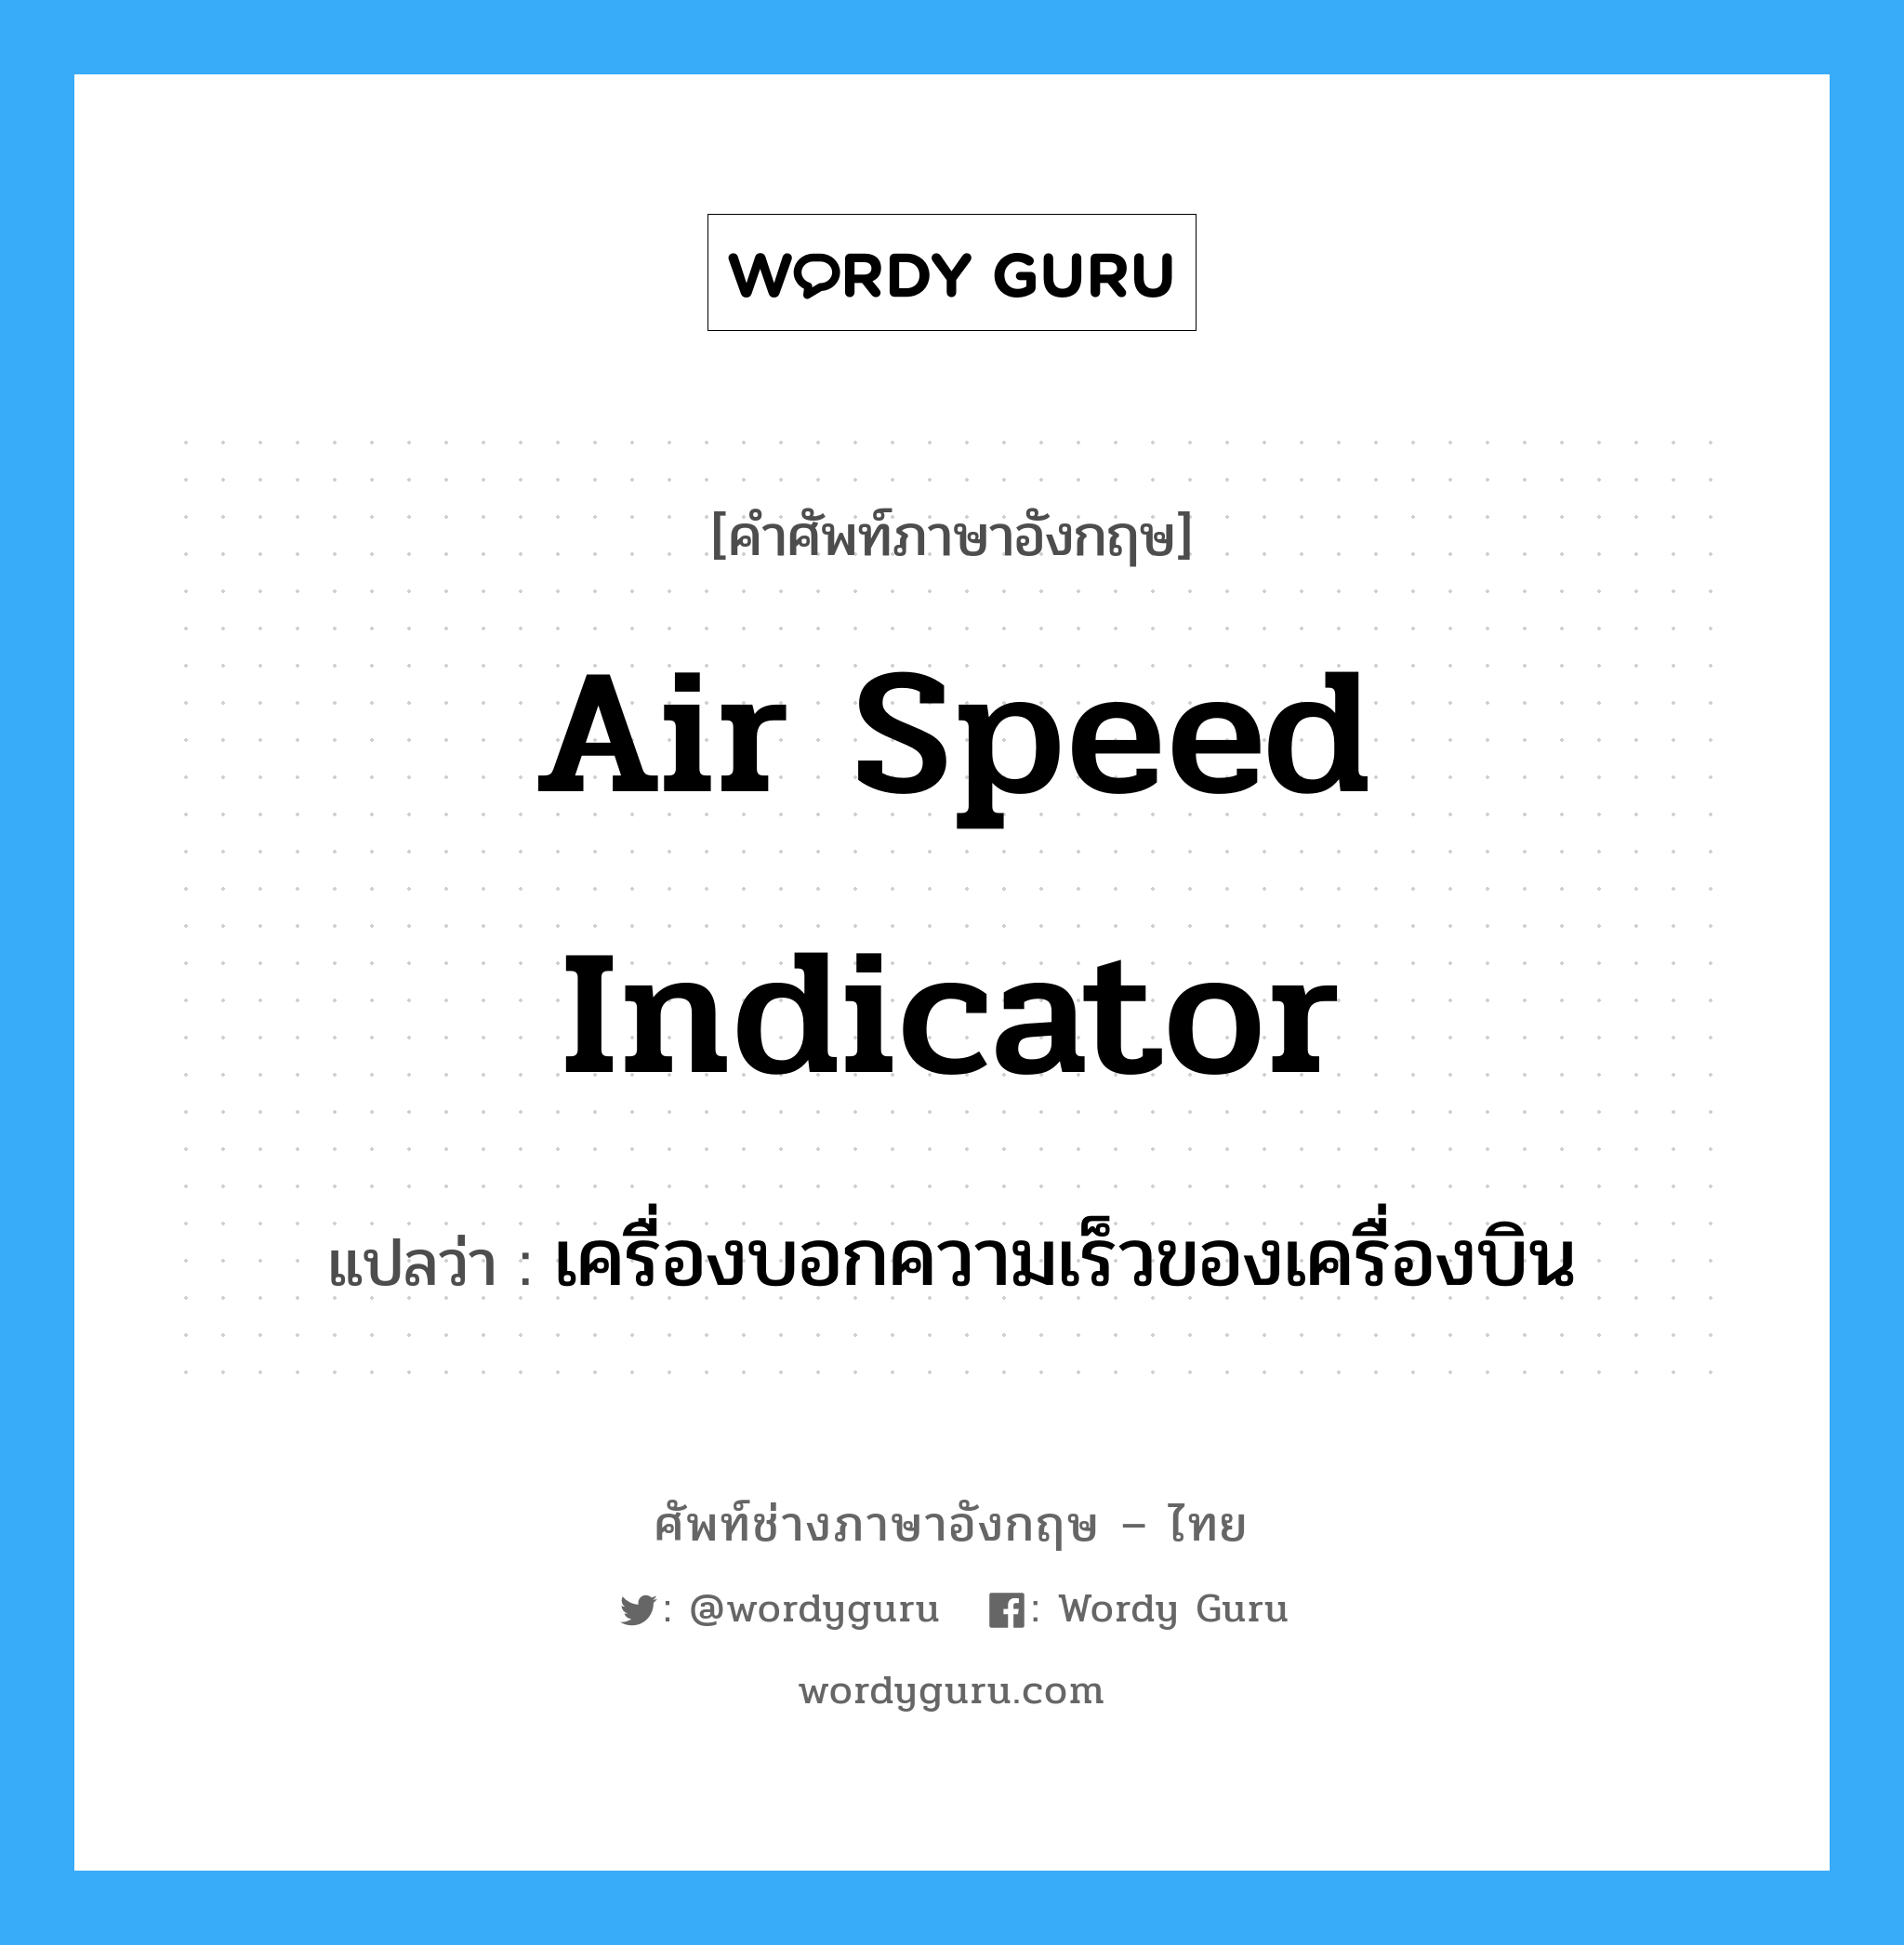 เครื่องบอกความเร็วของเครื่องบิน ภาษาอังกฤษ?, คำศัพท์ช่างภาษาอังกฤษ - ไทย เครื่องบอกความเร็วของเครื่องบิน คำศัพท์ภาษาอังกฤษ เครื่องบอกความเร็วของเครื่องบิน แปลว่า air speed indicator